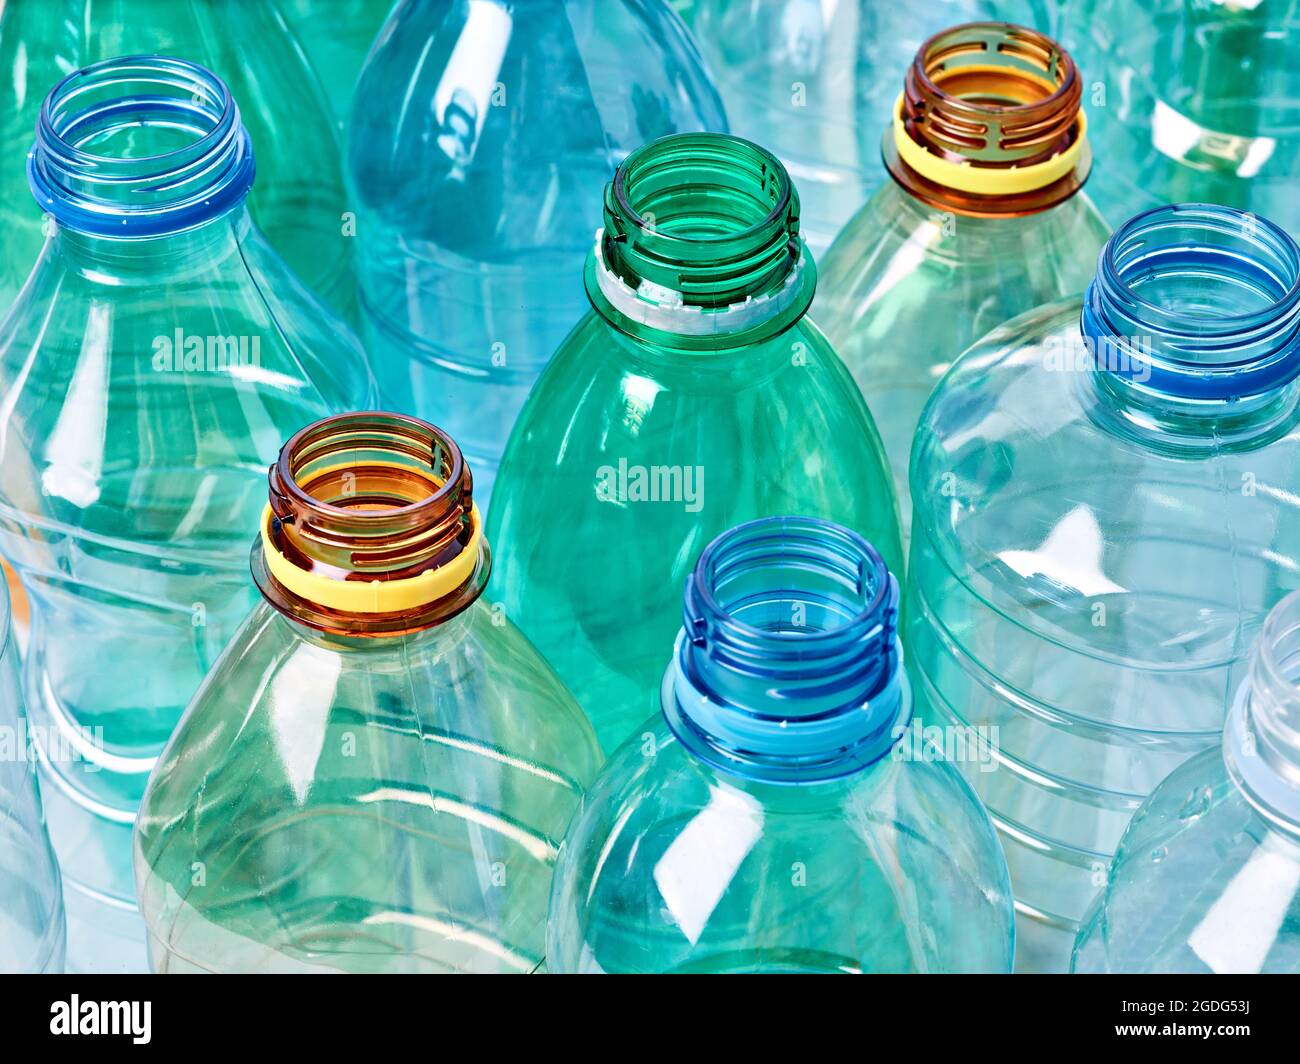 bouteille en plastique contenant à eau recyclage déchets environnement boisson vide boisson Banque D'Images